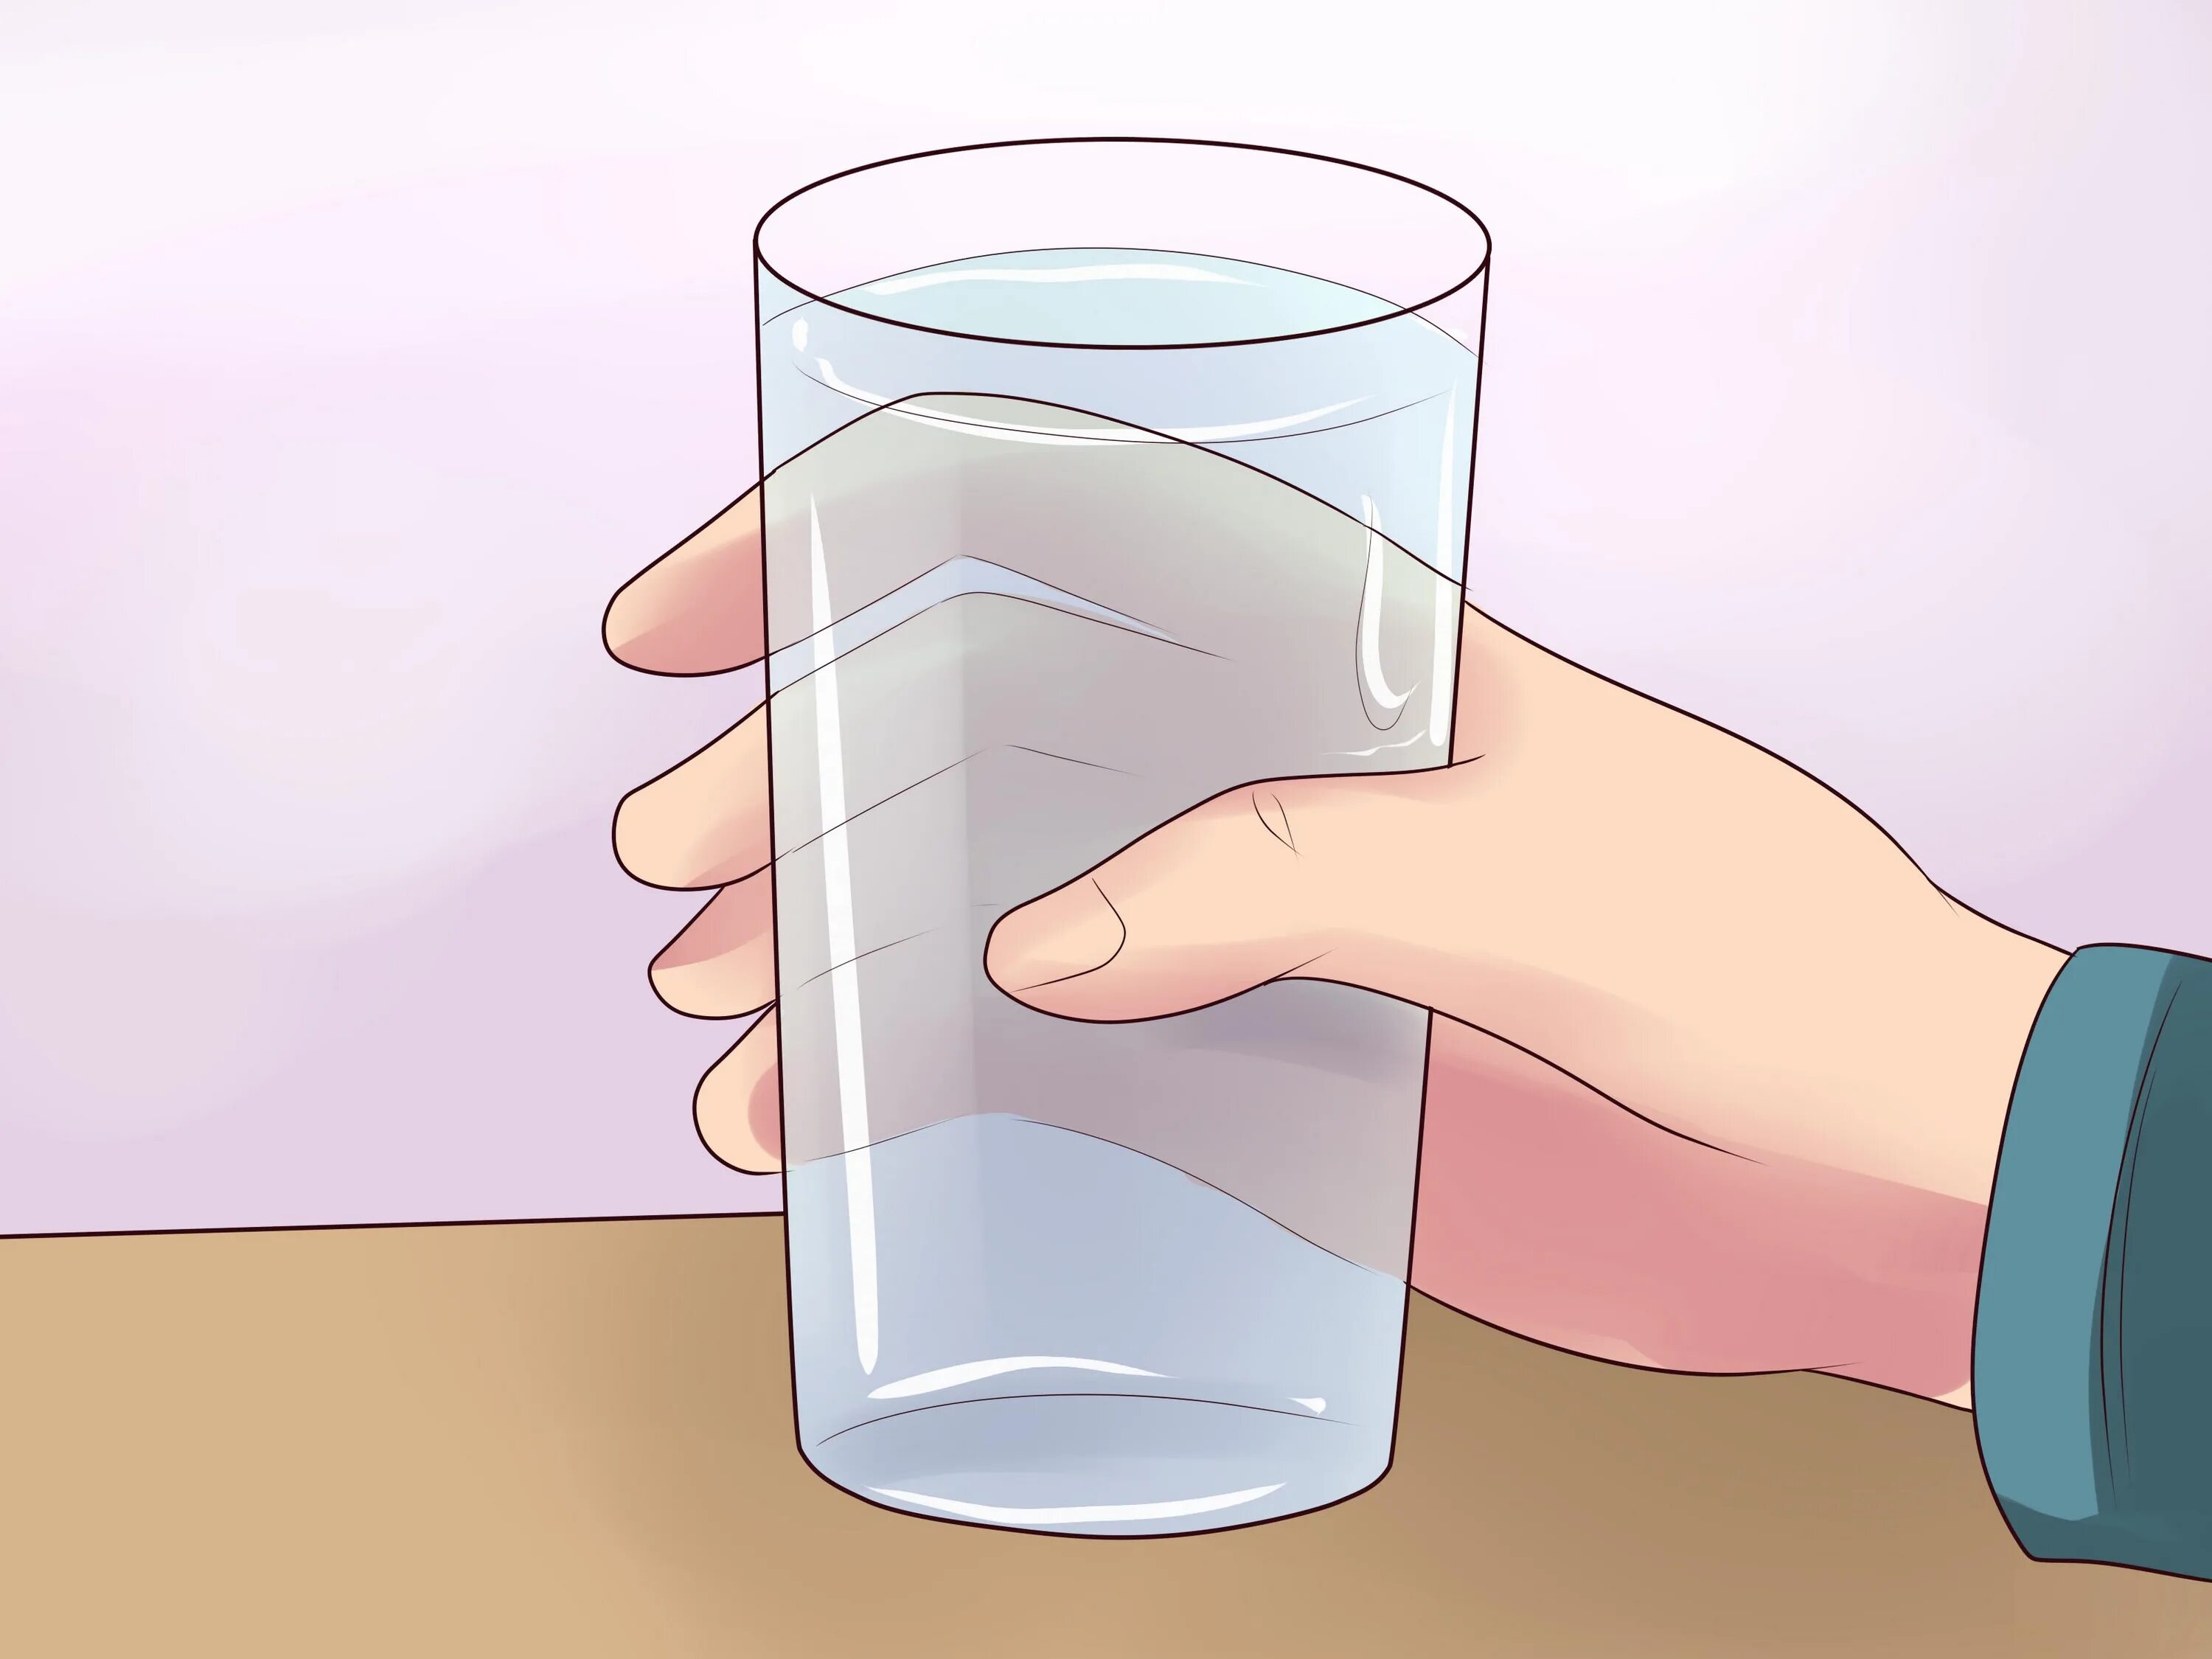 В стакан налили 150 г воды. Стакан воды. Стакан воды в руке. Опрокинутый стакан с водой. Переливание воды из стакана в стакан.